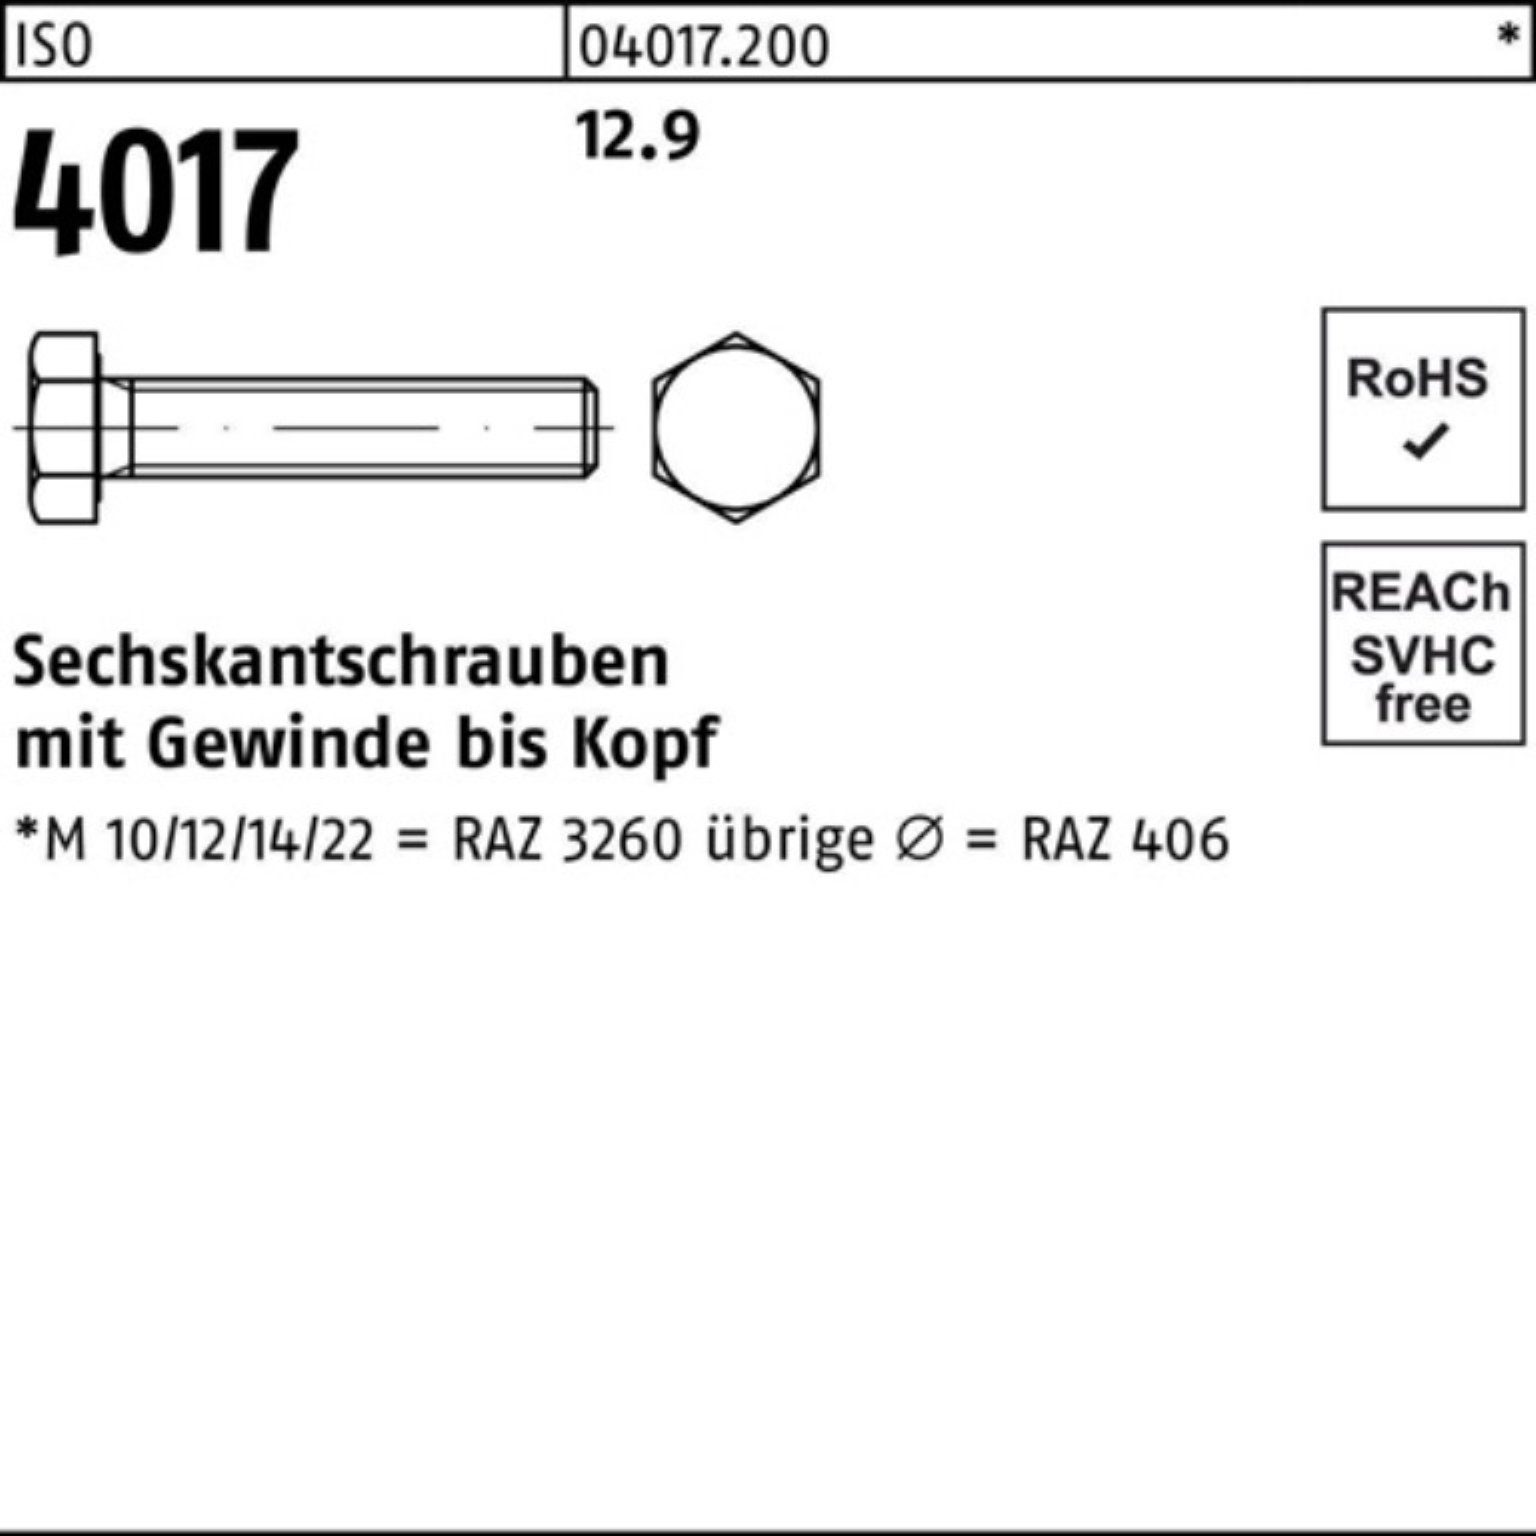 Bufab Sechskantschraube Stück 4017 ISO 200 Pack M8x Sechskantschraube VG 45 40 12.9 ISO 200er